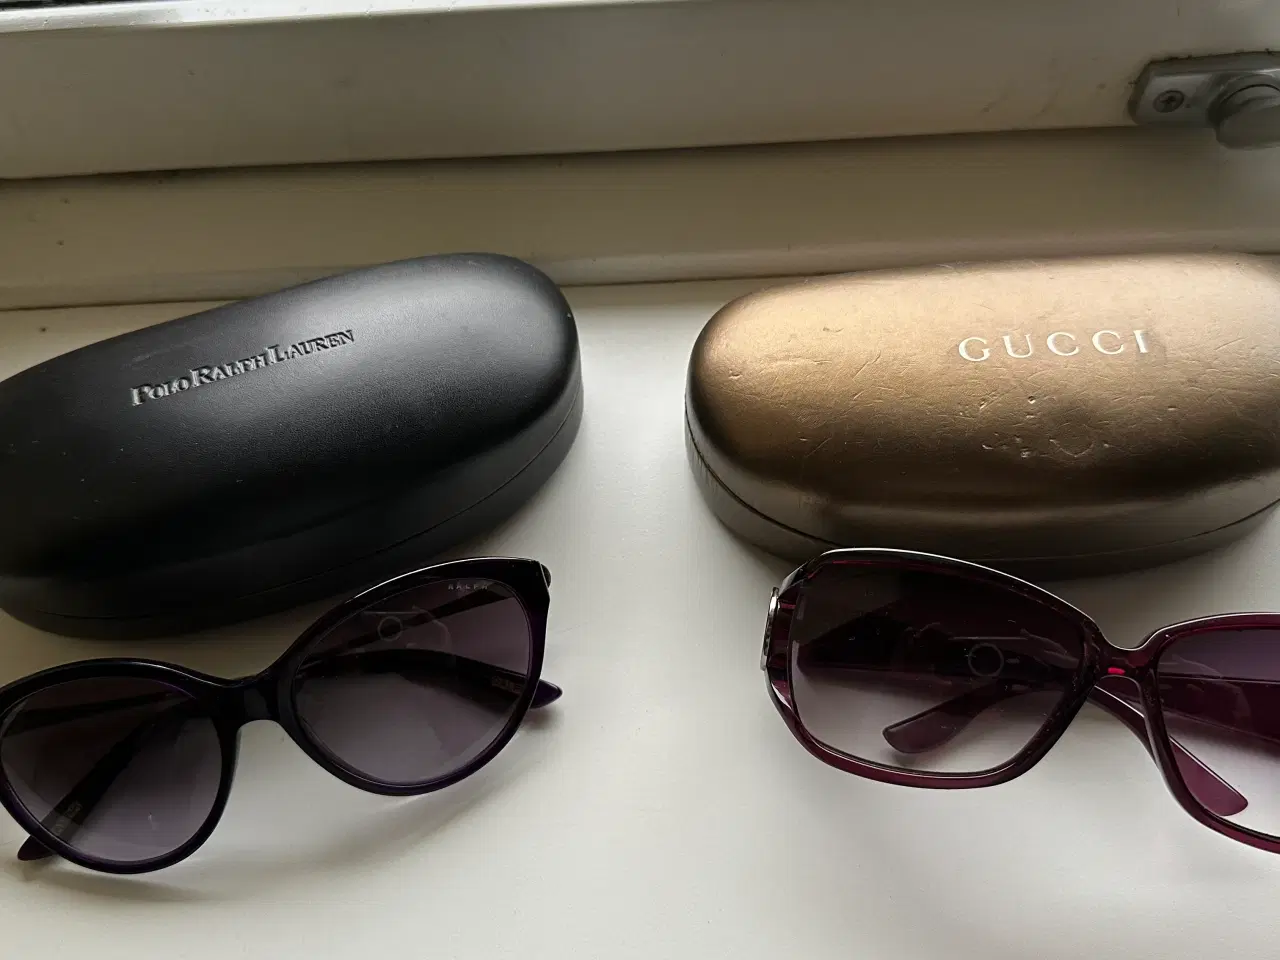 Billede 1 - Solbriller af mærket Ralph Lauren og Gucci.